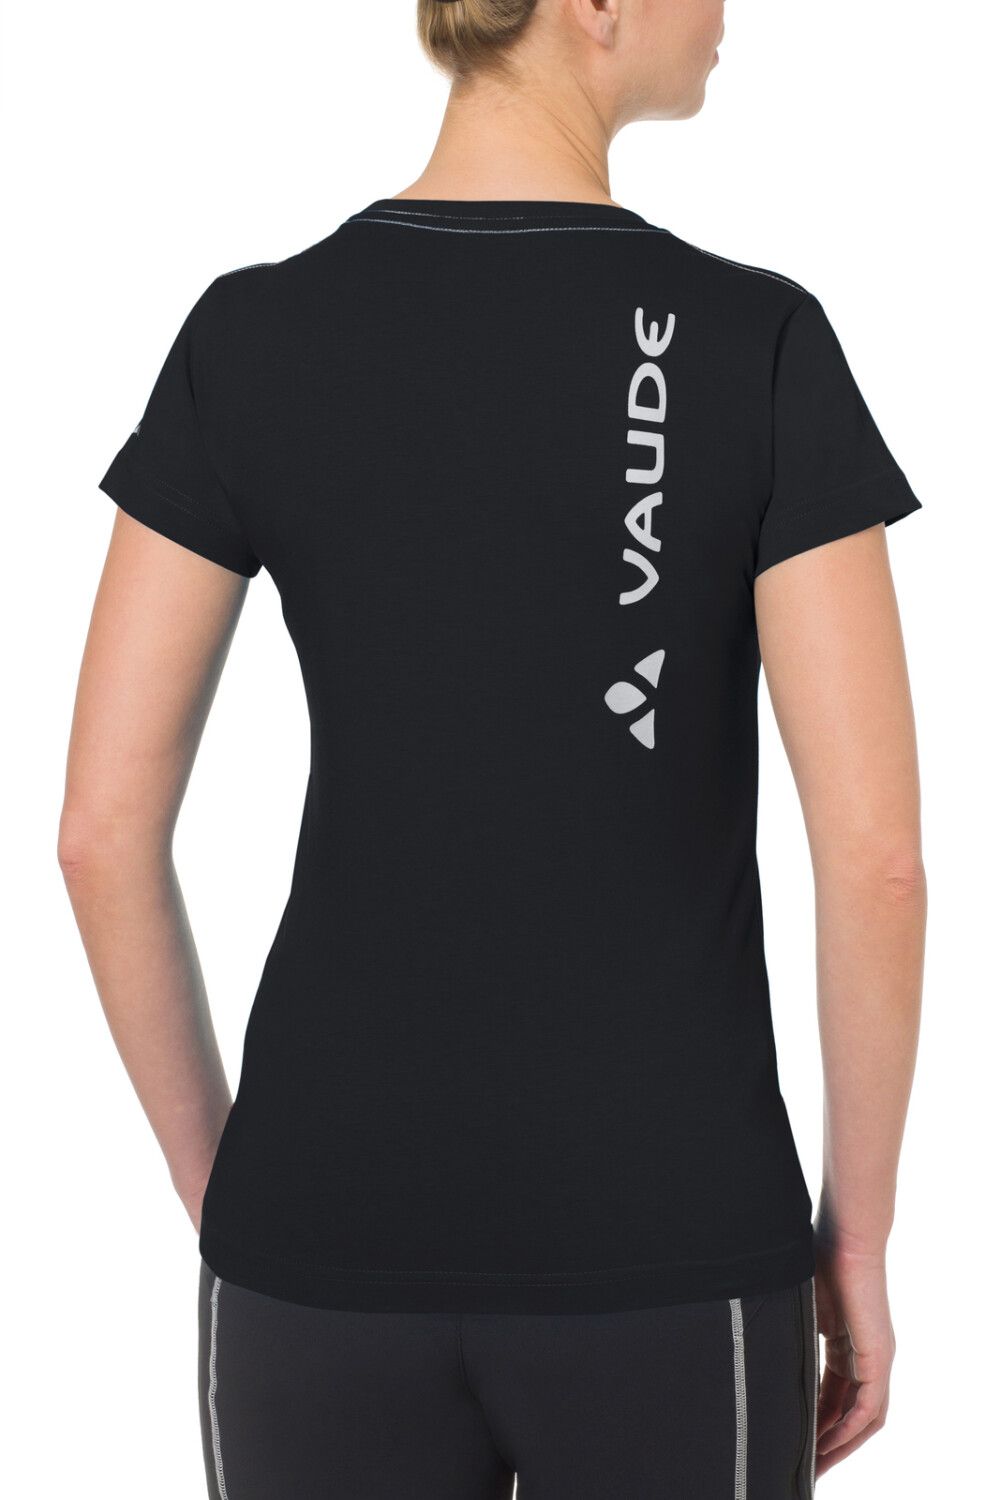 VAUDE Women's Brand Shirt (Bild 8)